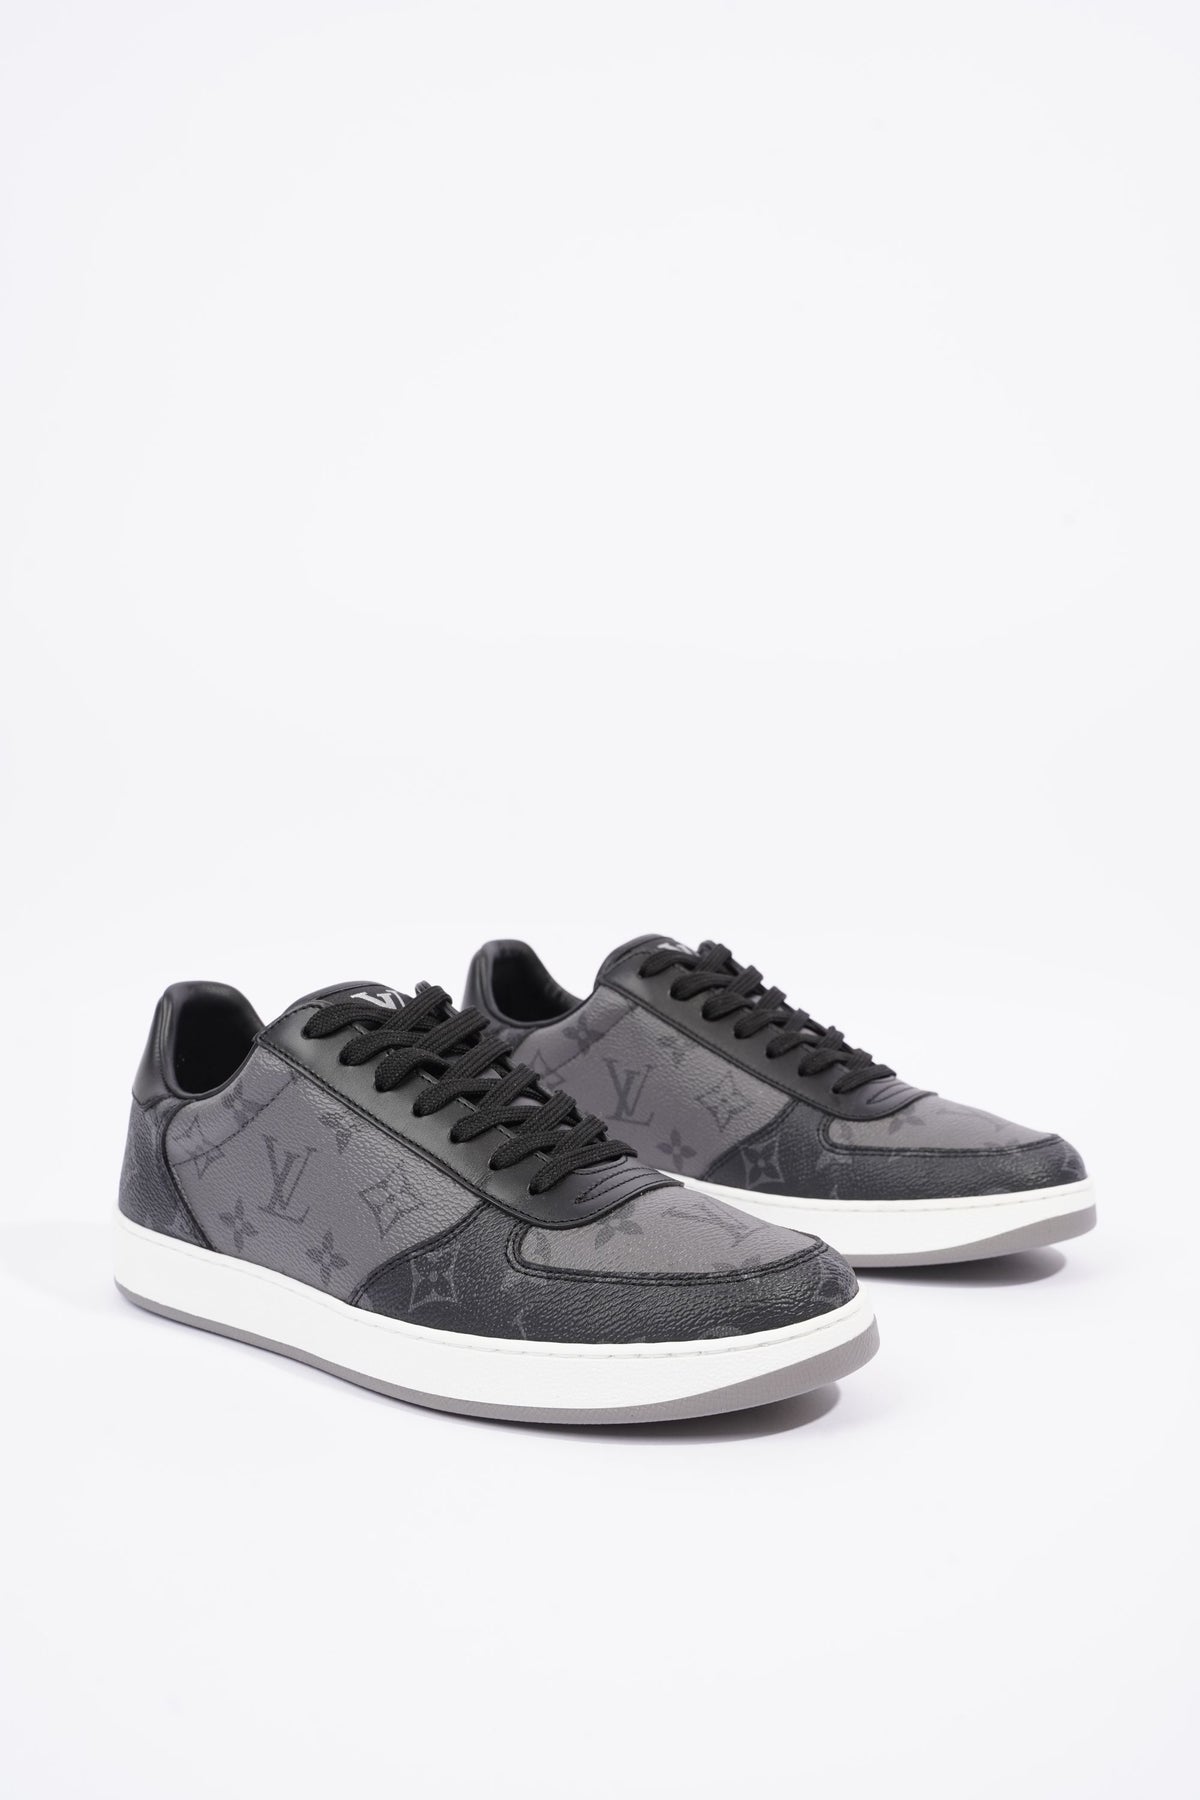 Louis Vuitton® Rivoli Sneaker Black. Size 06.0